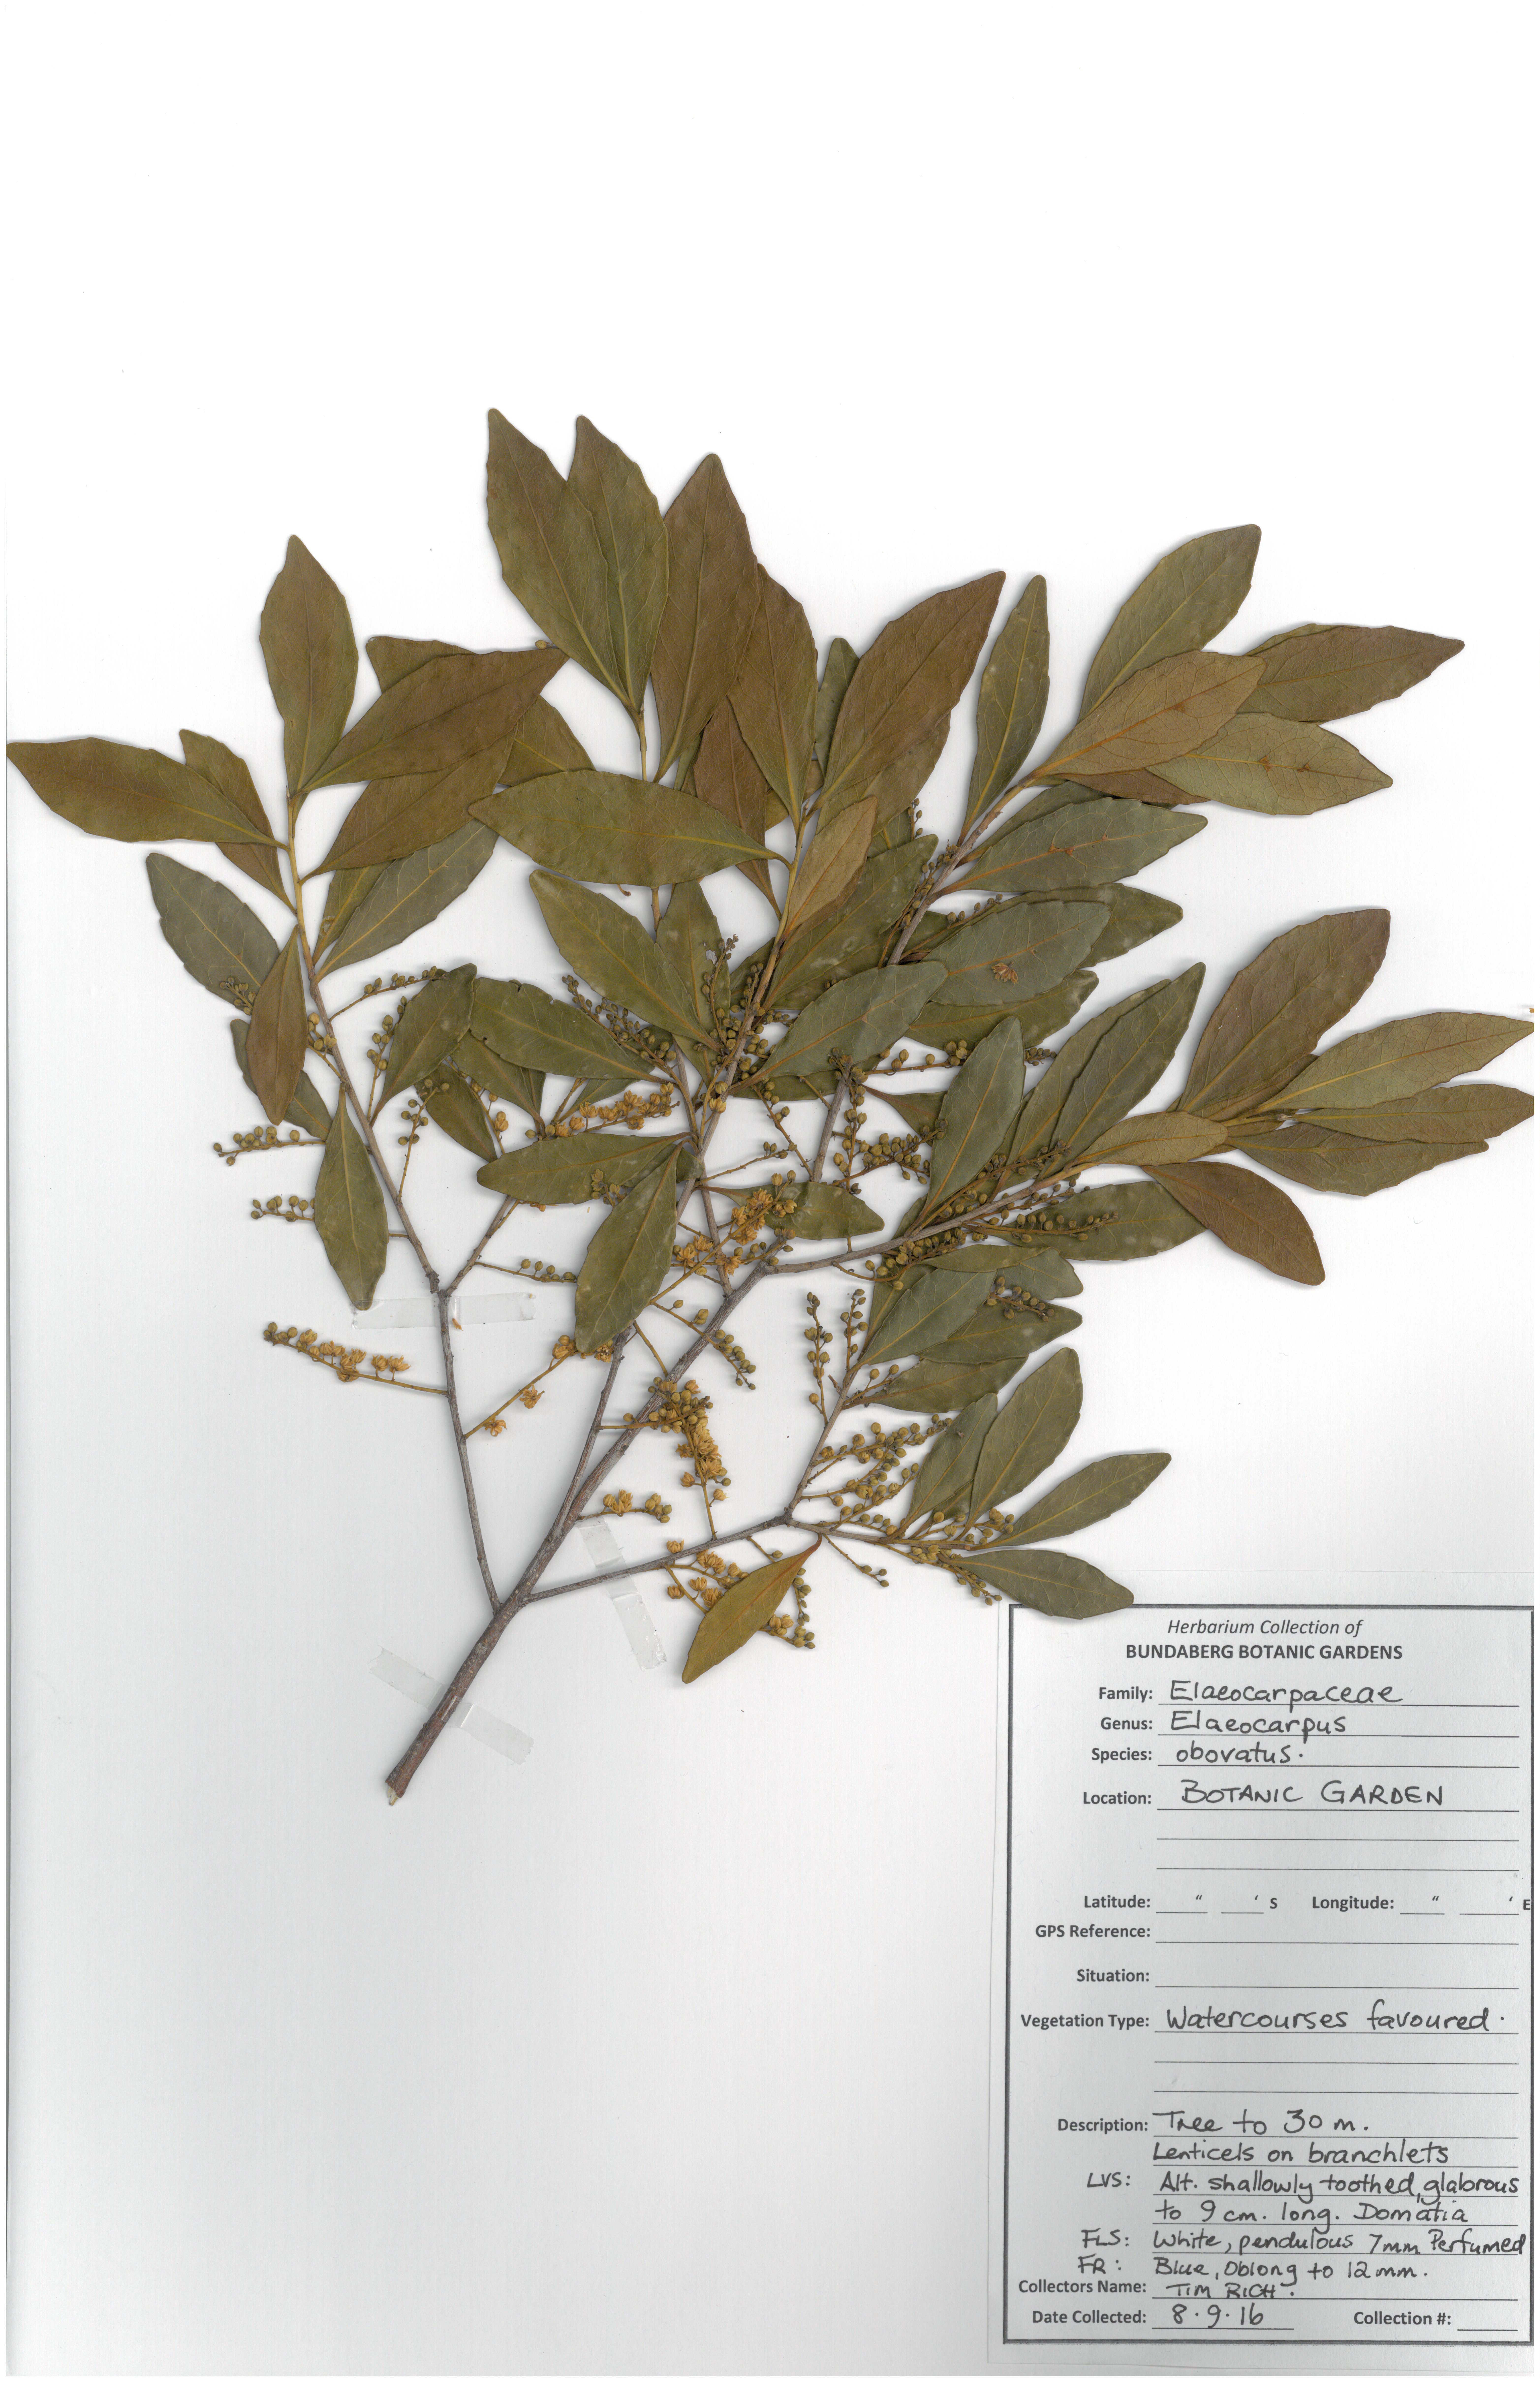 Elaeocarpaceae elaeocarpus obovatus 08 09 16